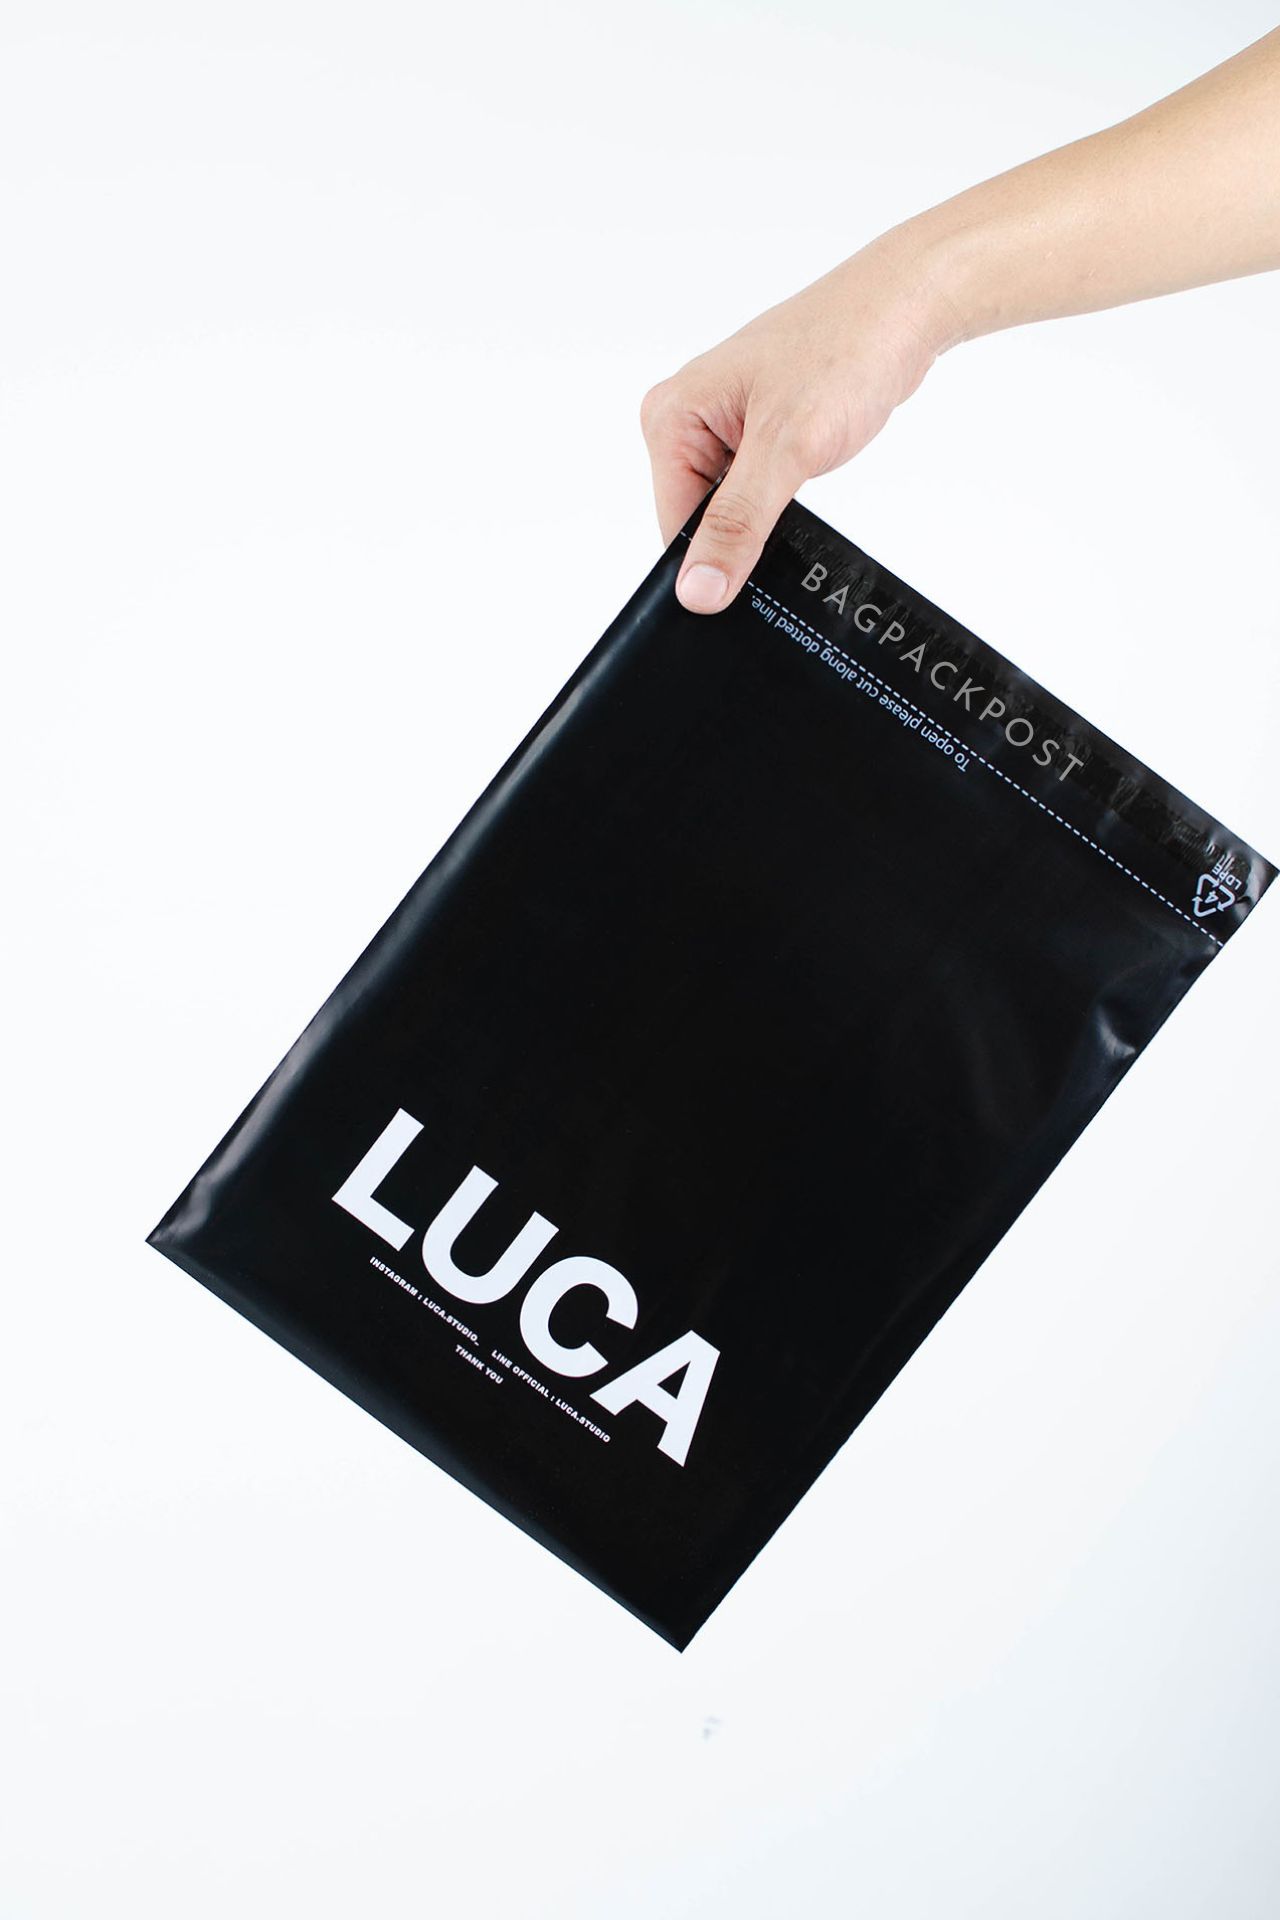 ผลิตถุงไปรษณีย์ ถุงพัสดุ ซองไปรษณีย์พิมพ์ลาย Luca ซองไปรษณีย์สีดำ ถุงไปรษณีย์พิมพ์ลาย 1 BagPackPost